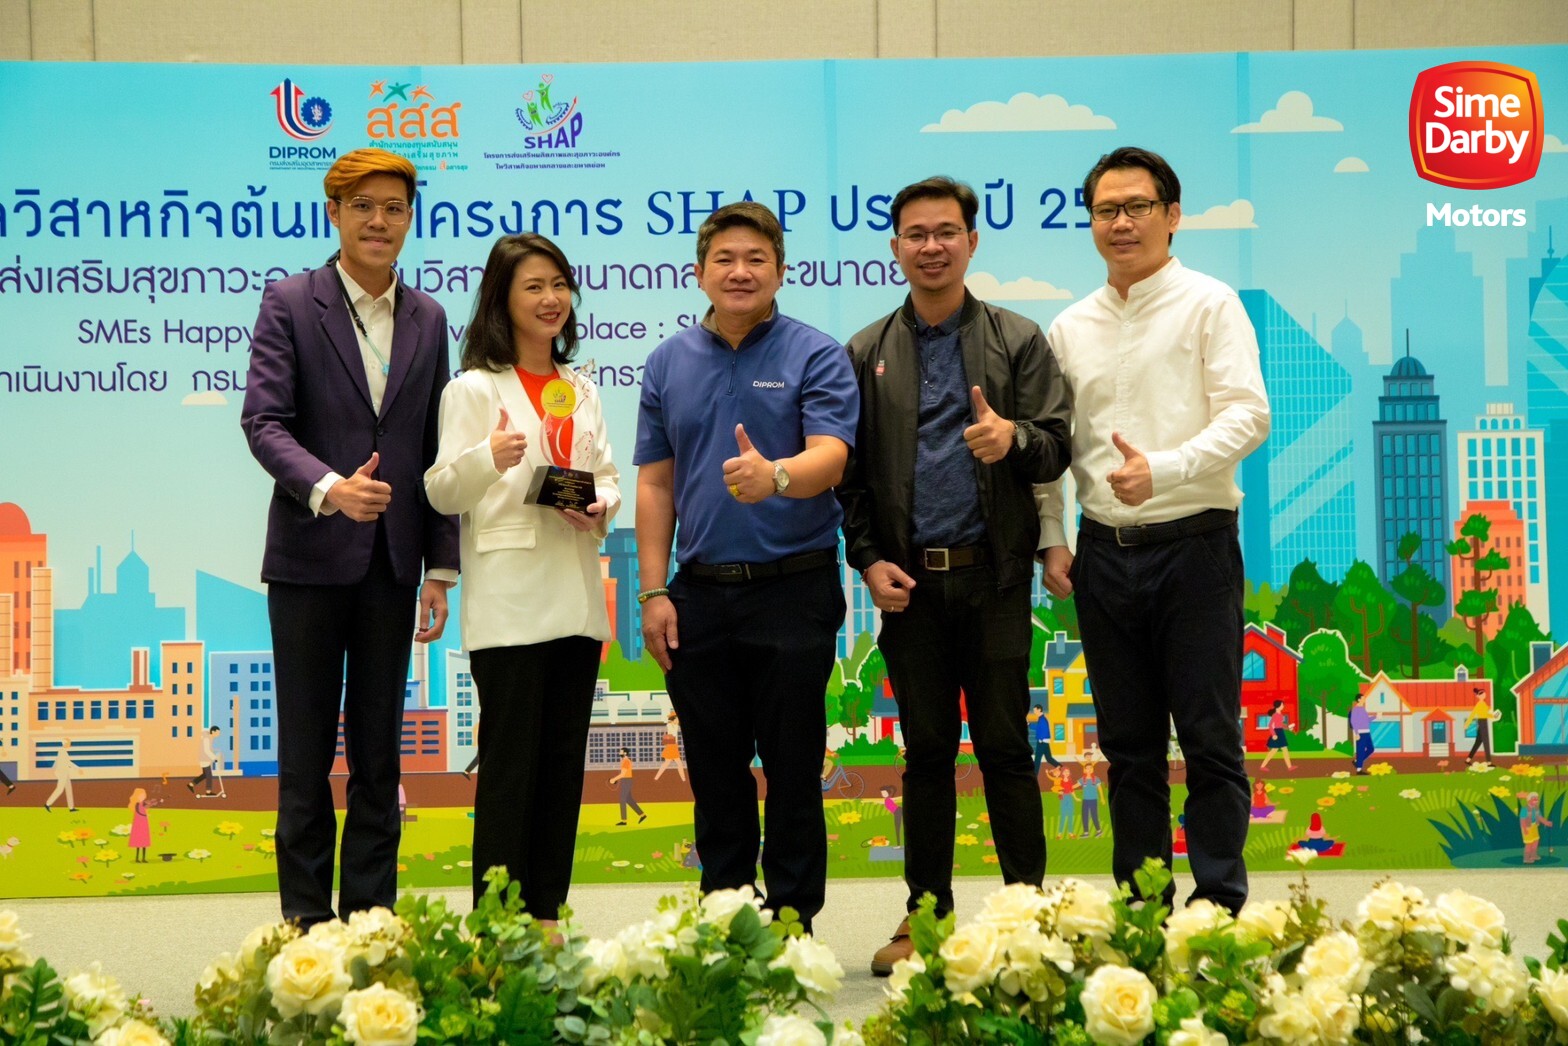 ไซม์ ดาร์บี้ มอเตอร์ส ประเทศไทย เข้ารับรางวัล องค์กรสร้างสุข 